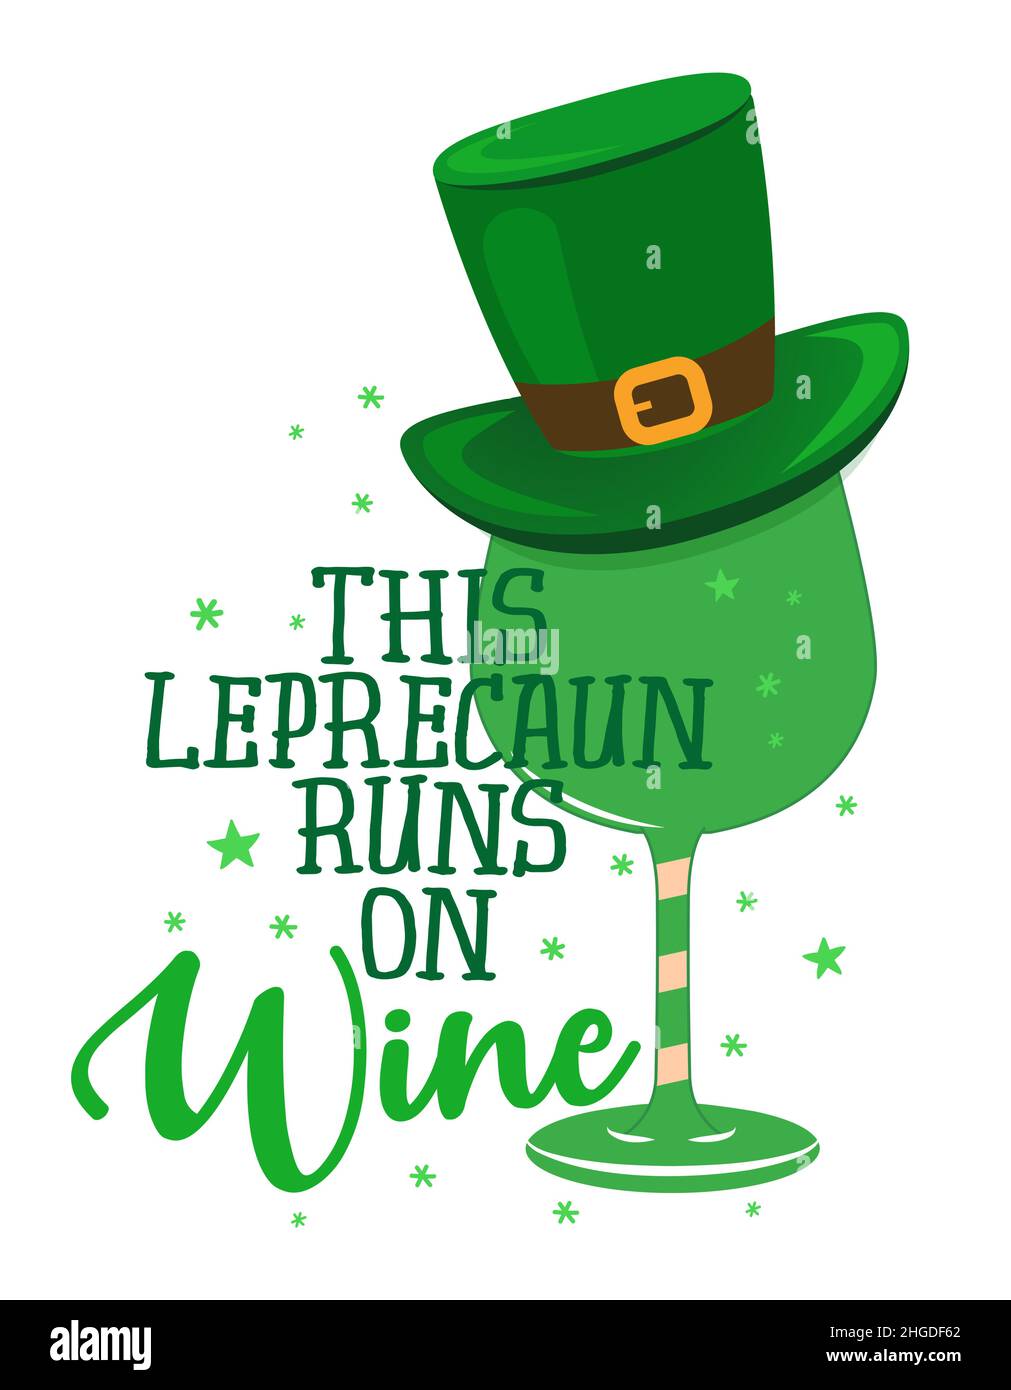 Ce Leprechaun court sur le vin - drôle de Saint Patrick's Day inspiration lettering design pour affiches, circulaires, t-shirts, cartes, invitations,autocollants, bann Illustration de Vecteur